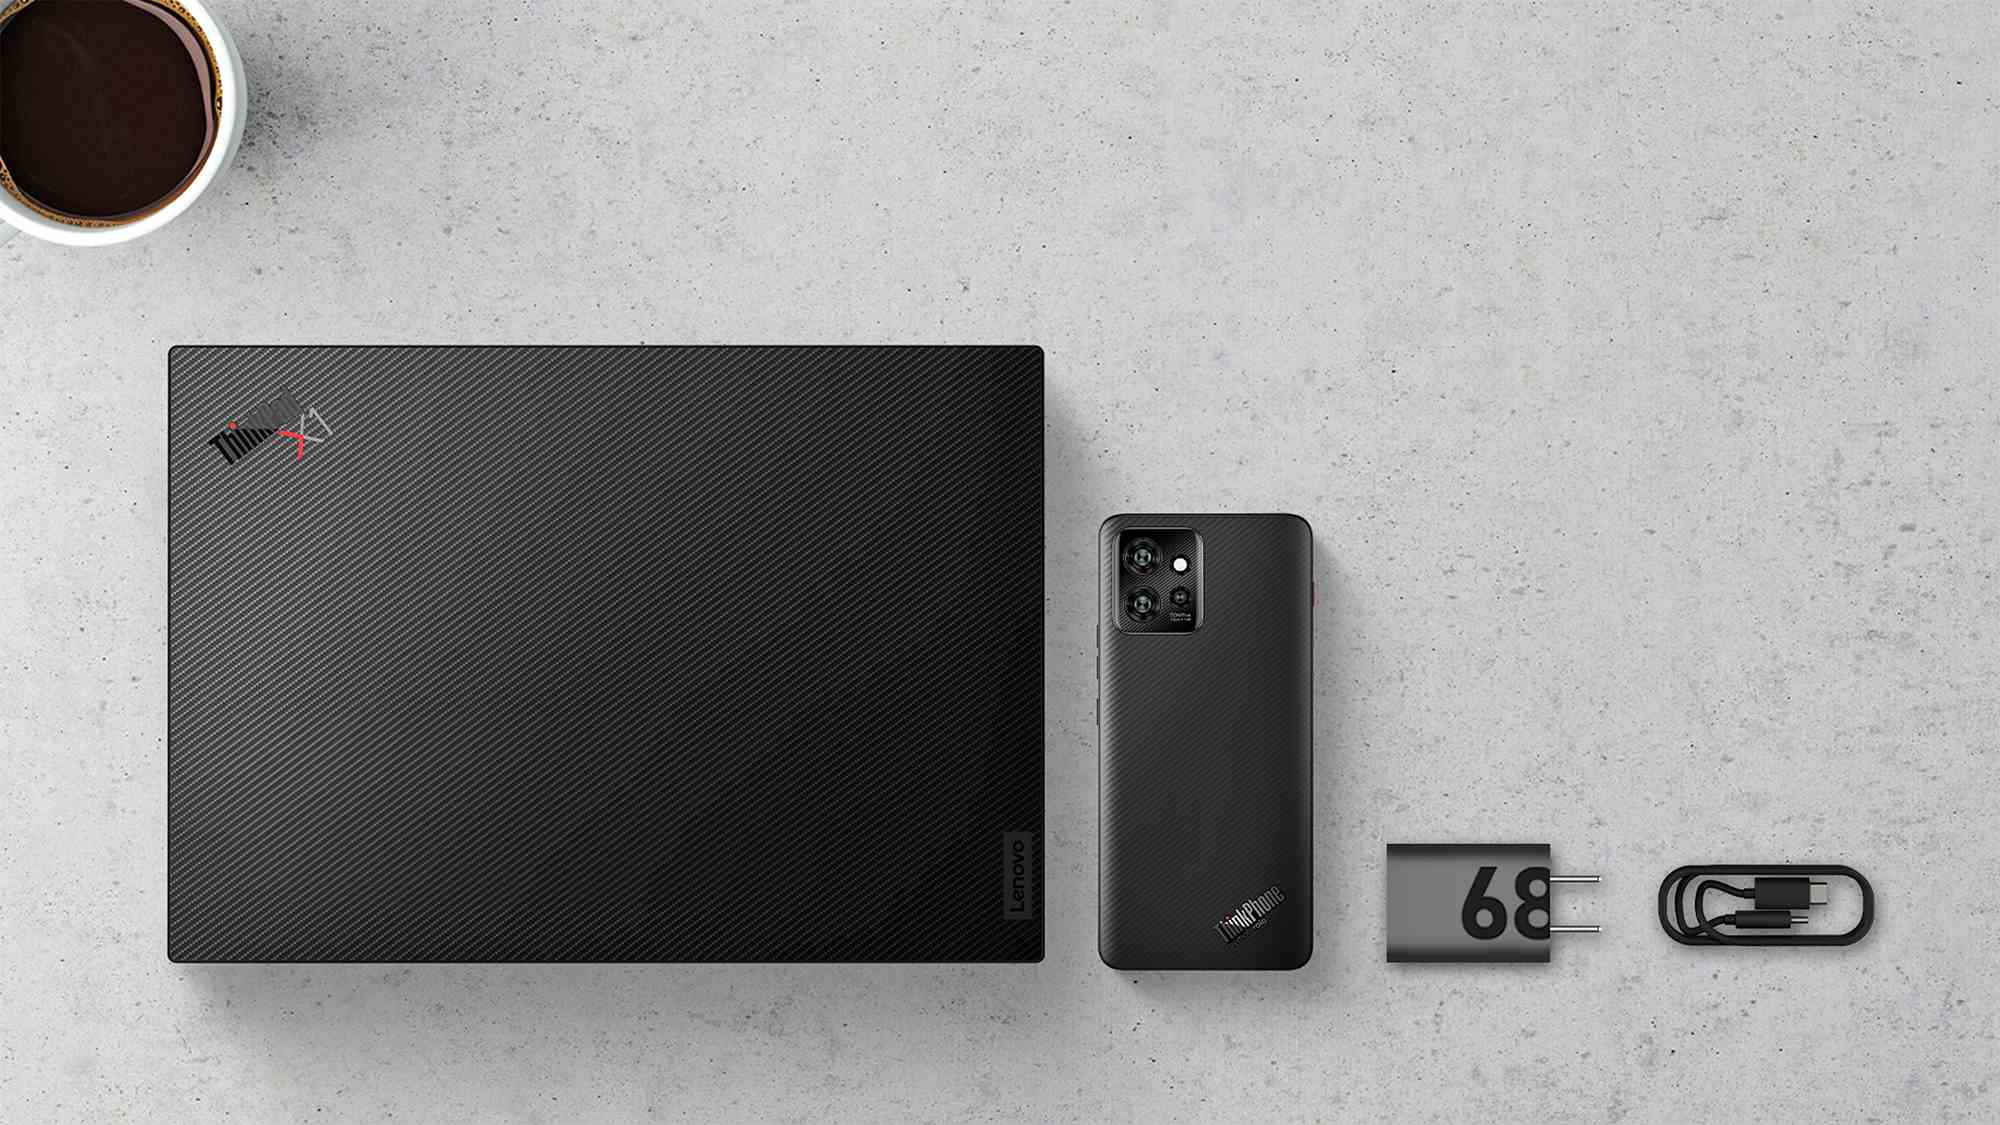 ThinkPad X1 Carbon, ThinkPhone de Motorola, image de presse du chargeur